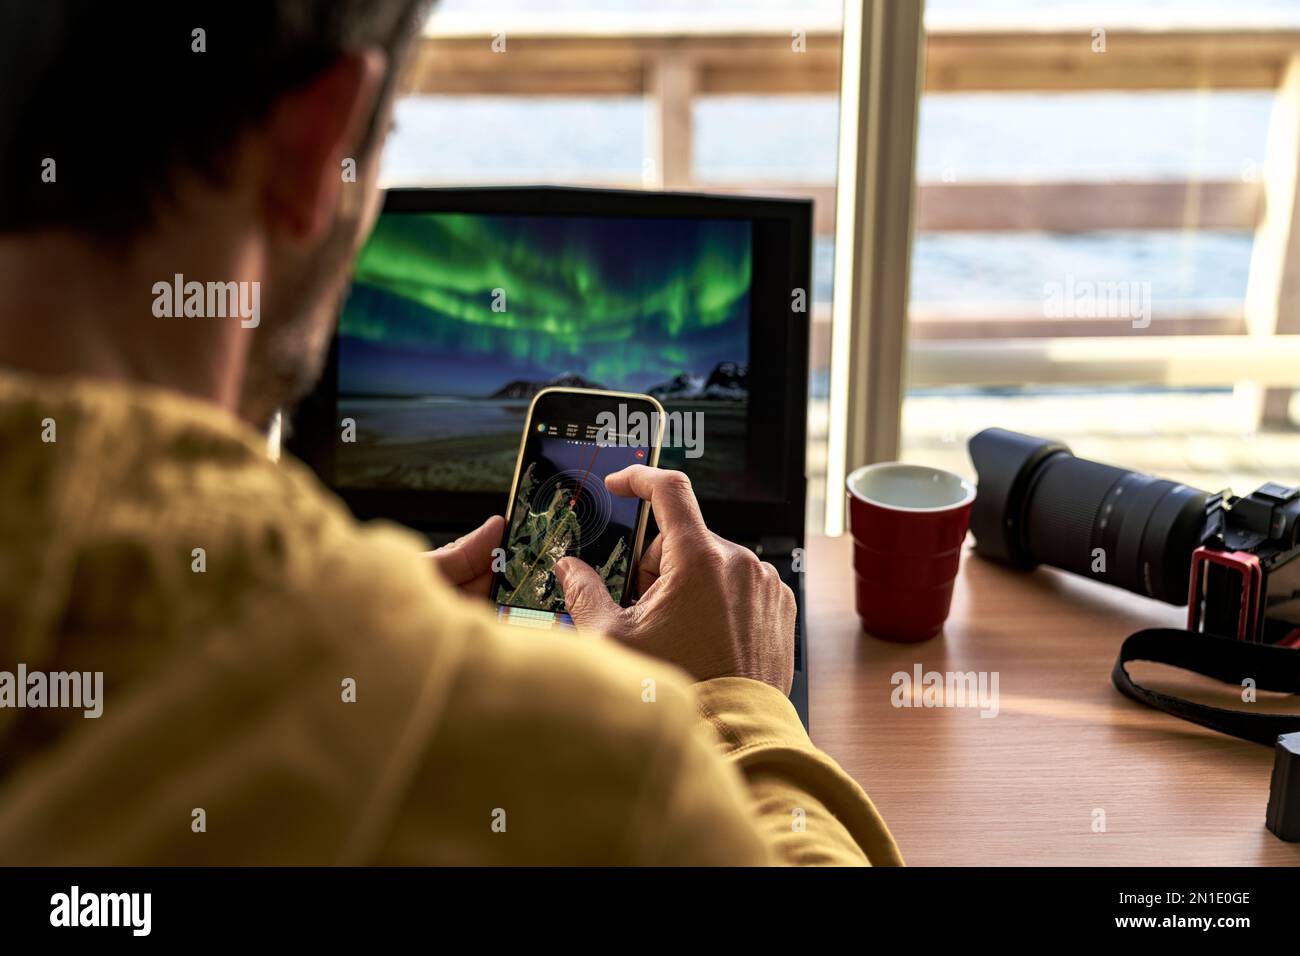 Un homme regardant des cartes sur un smartphone tout en travaillant avec un ordinateur portable, îles Lofoten, Norvège, Scandinavie, Europe Banque D'Images